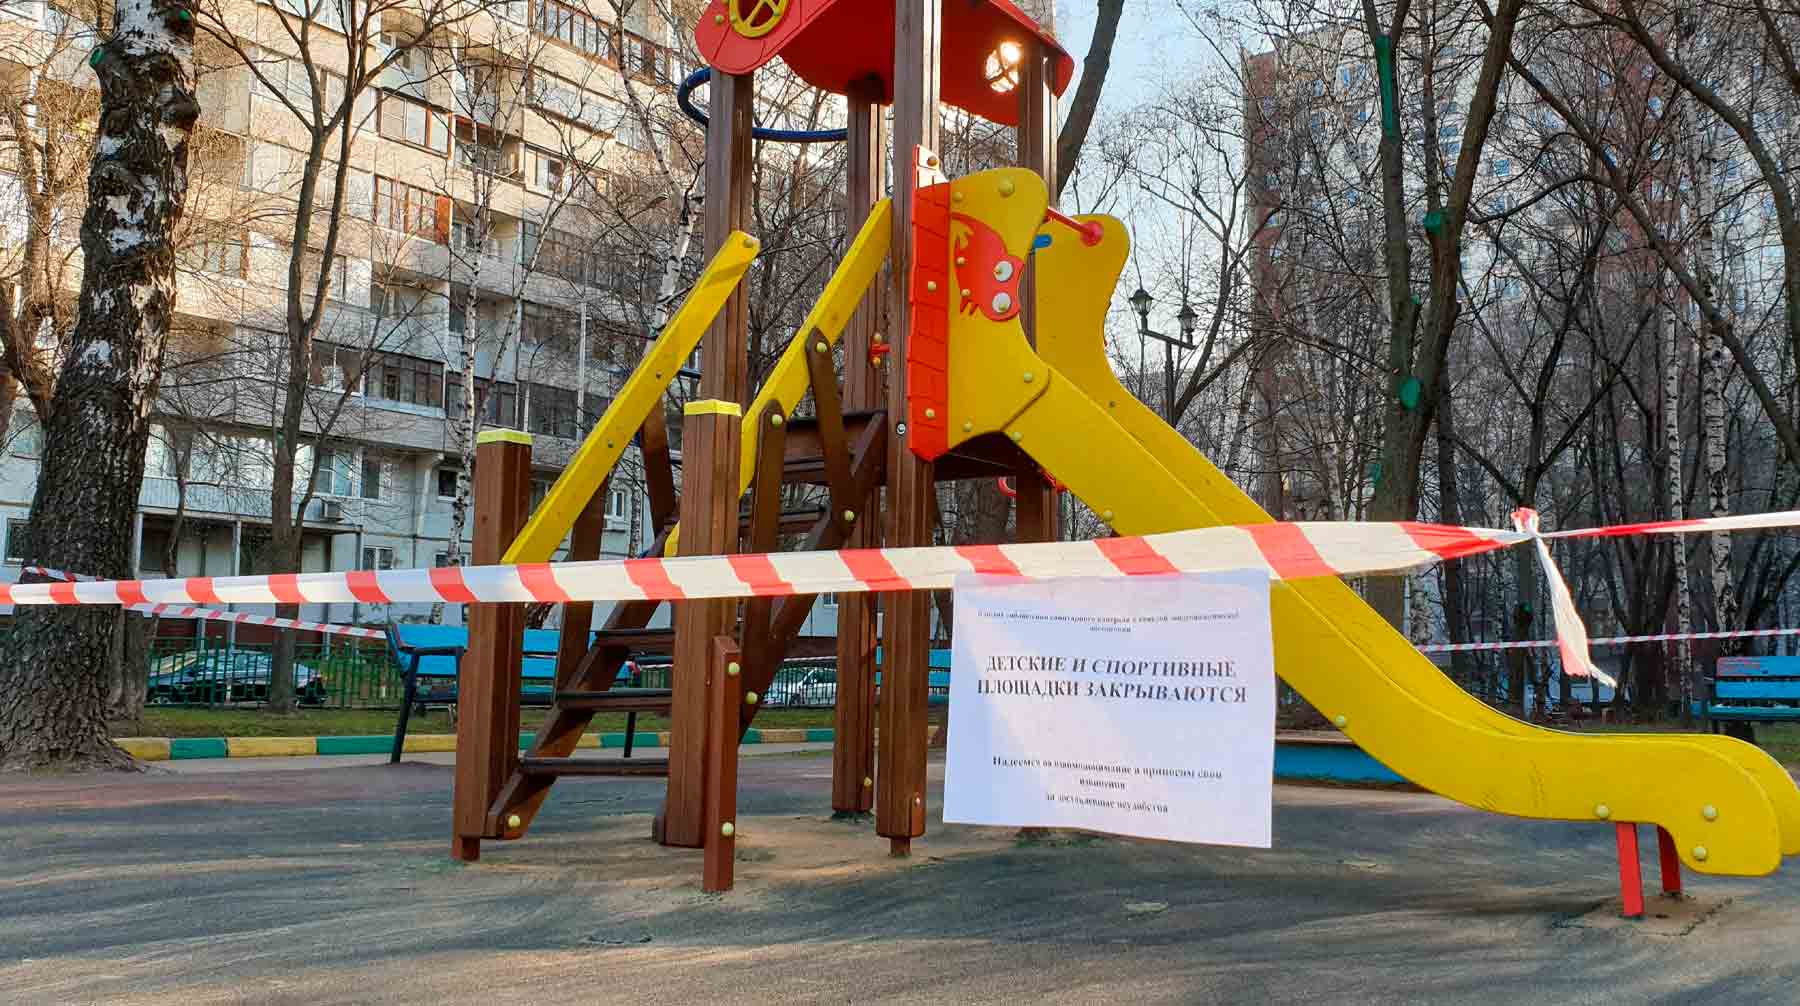 Число сторонников ограничений за последние полгода значительно упало, показал опрос Фото: © АГН Москва